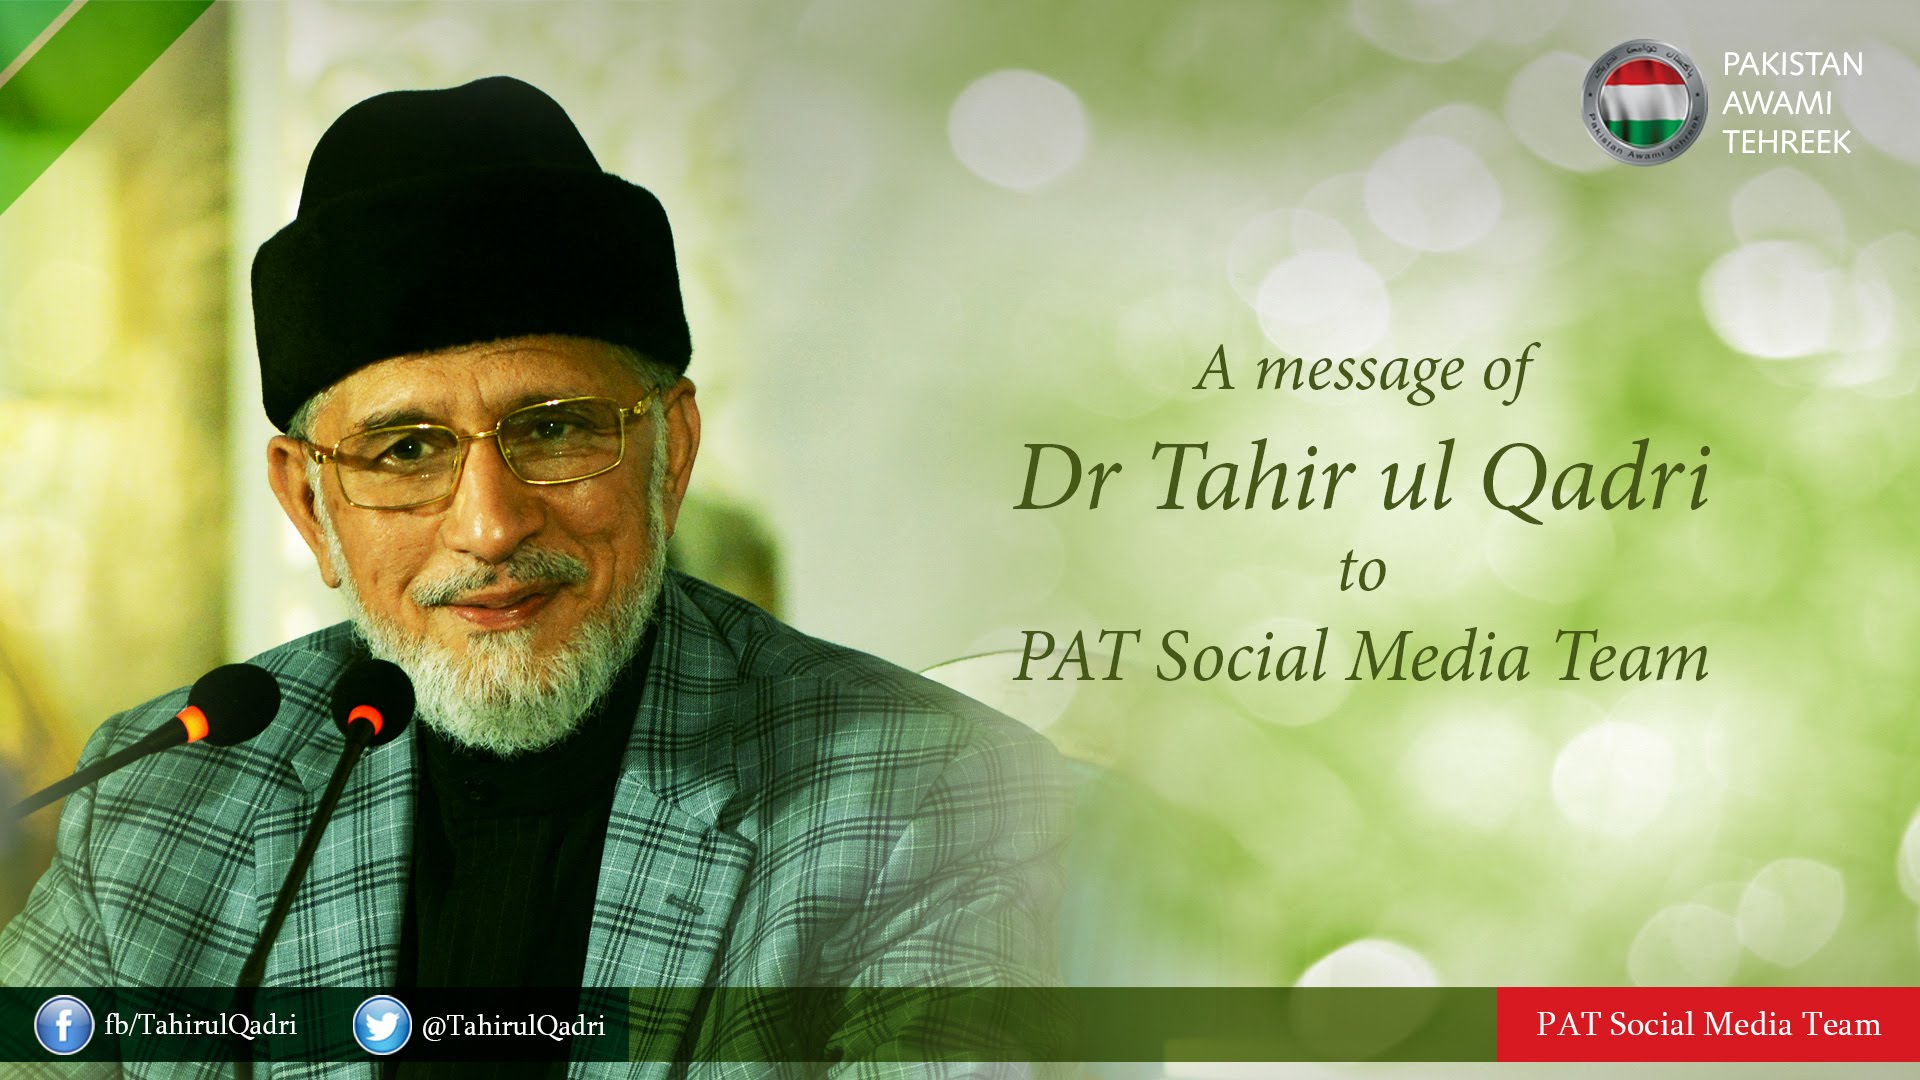 ڈاکٹر طاہرالقادری کا پاکستان عوامی تحریک سوشل میڈیا ٹیم کے لیے پیغام 